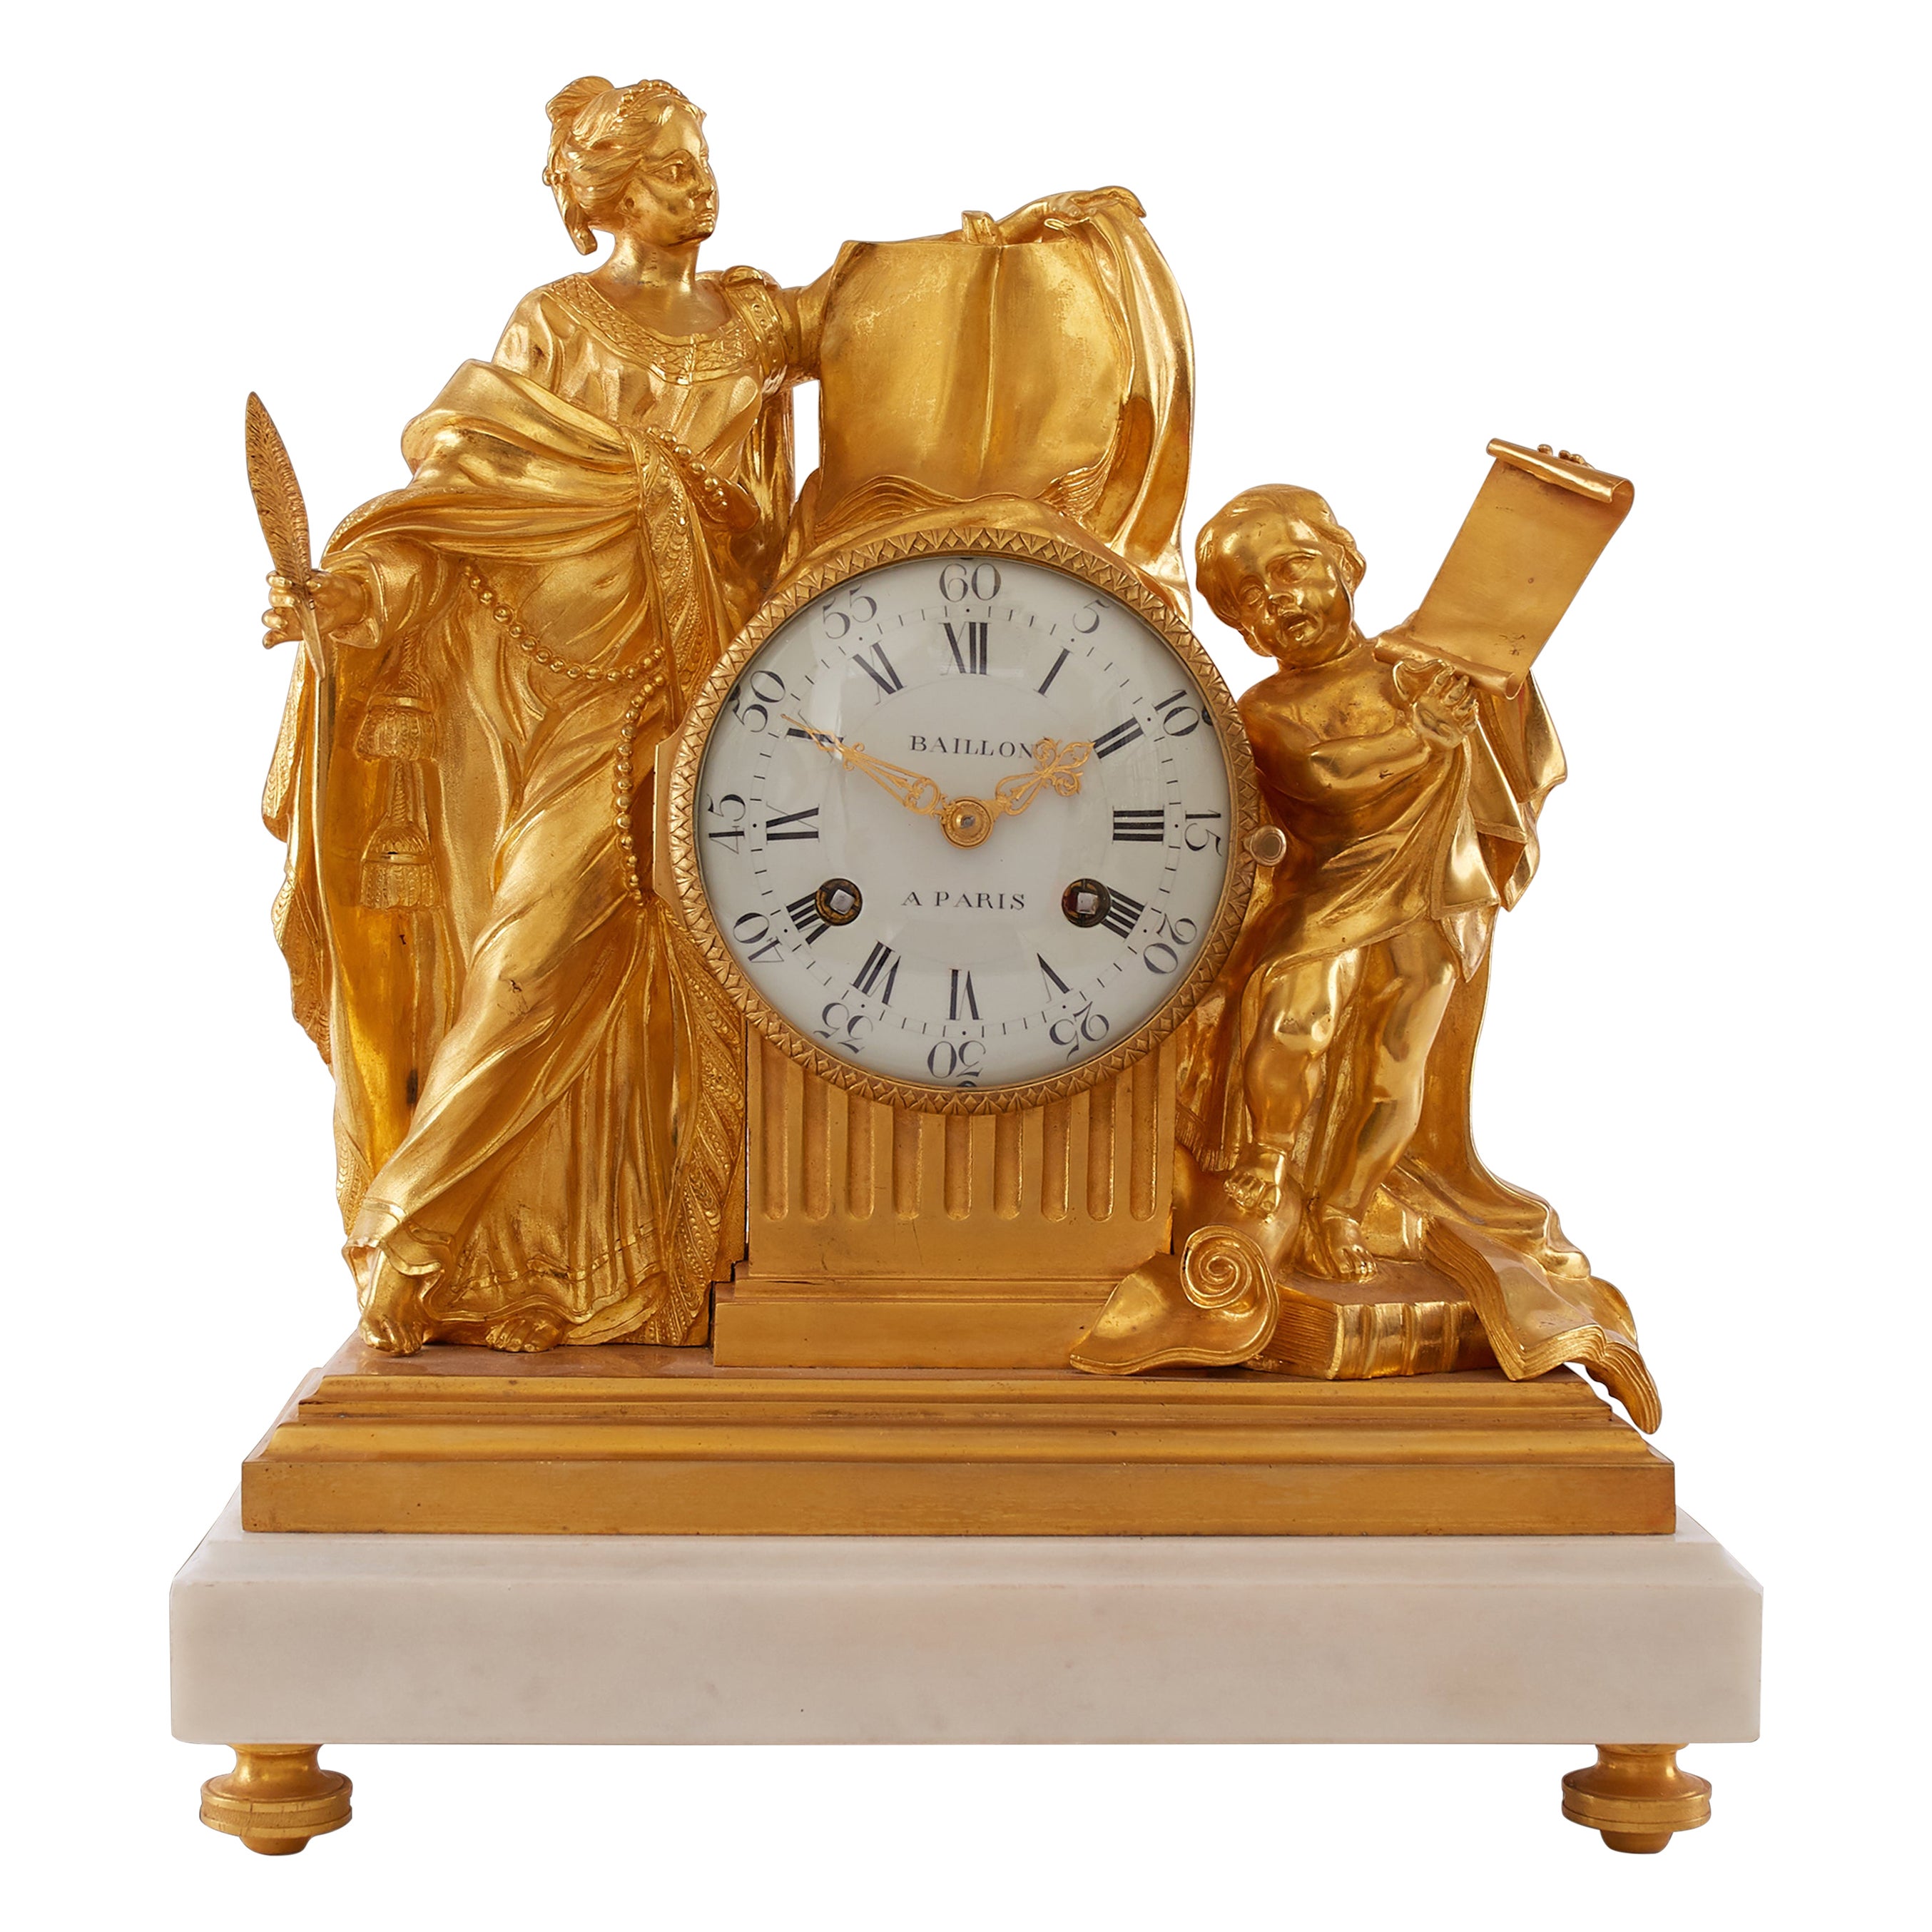 Horloge du XVIIIe siècle, Baillon à Paris